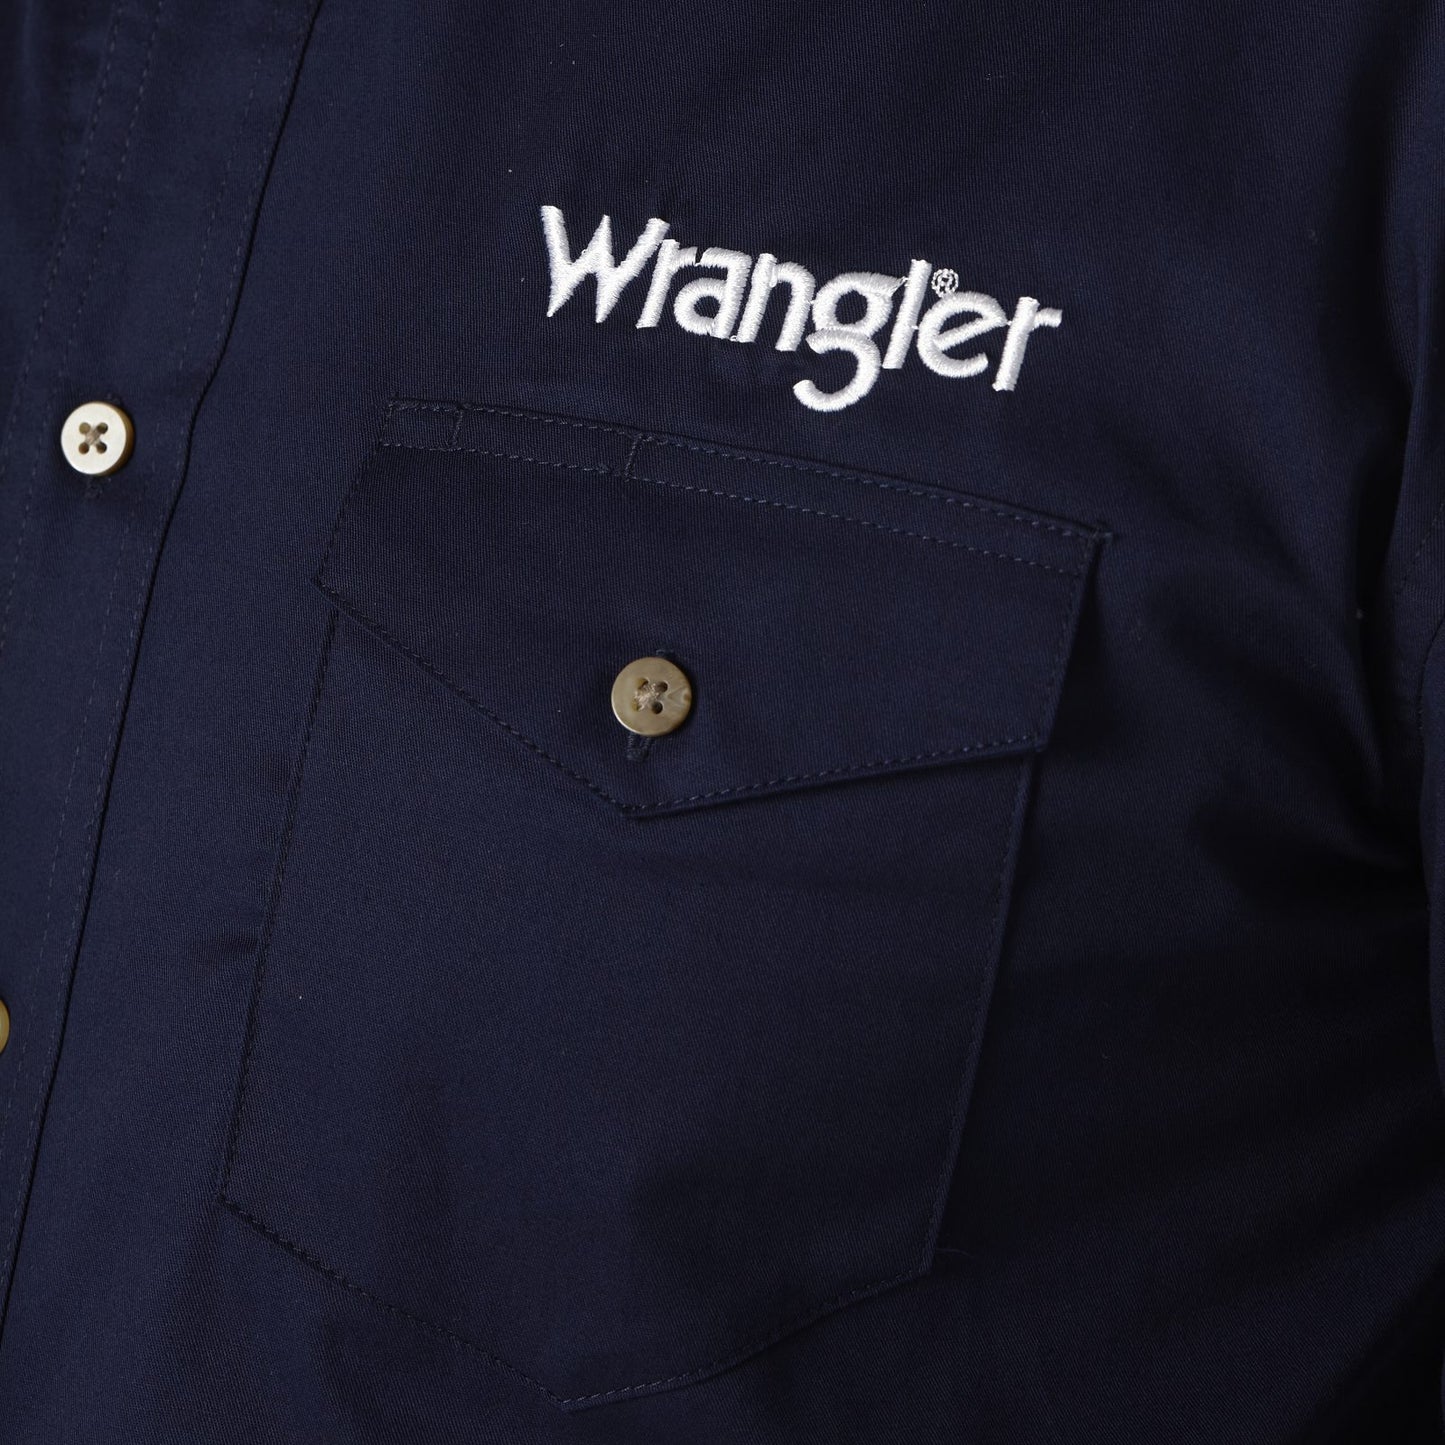 Wrangler Logo Navy Long Sleeve Button Down Shirt